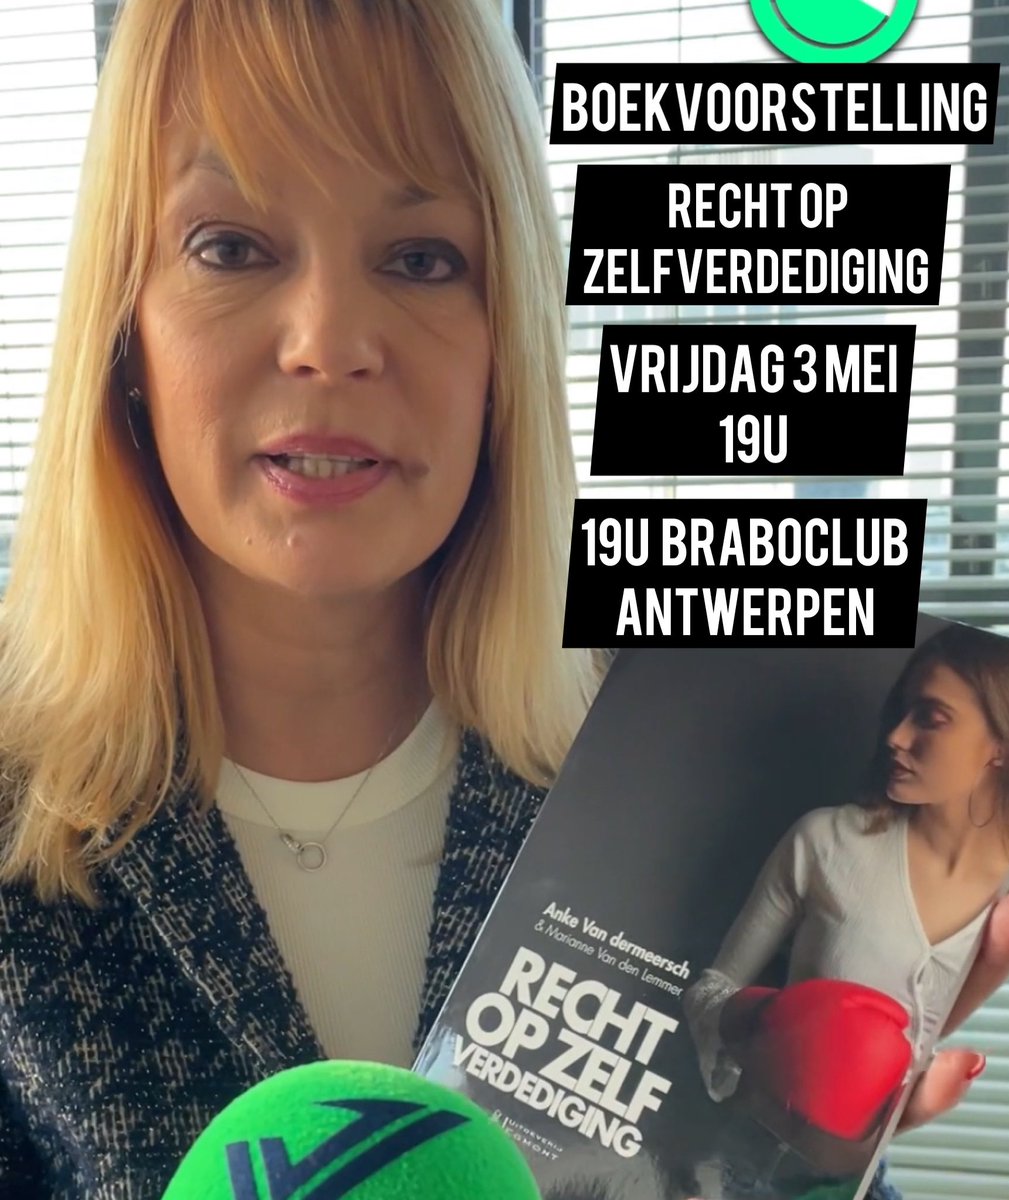 Morgen stelt Vlaams volksvertegenwoordiger Anke Van dermeersch om 19u haar nieuw boek ‘Recht op Zelfverdediging’ voor in de Brabobar (Amerikalei 98) in #Antwerpen. De bar is open vanaf 17u! Iedereen welkom!